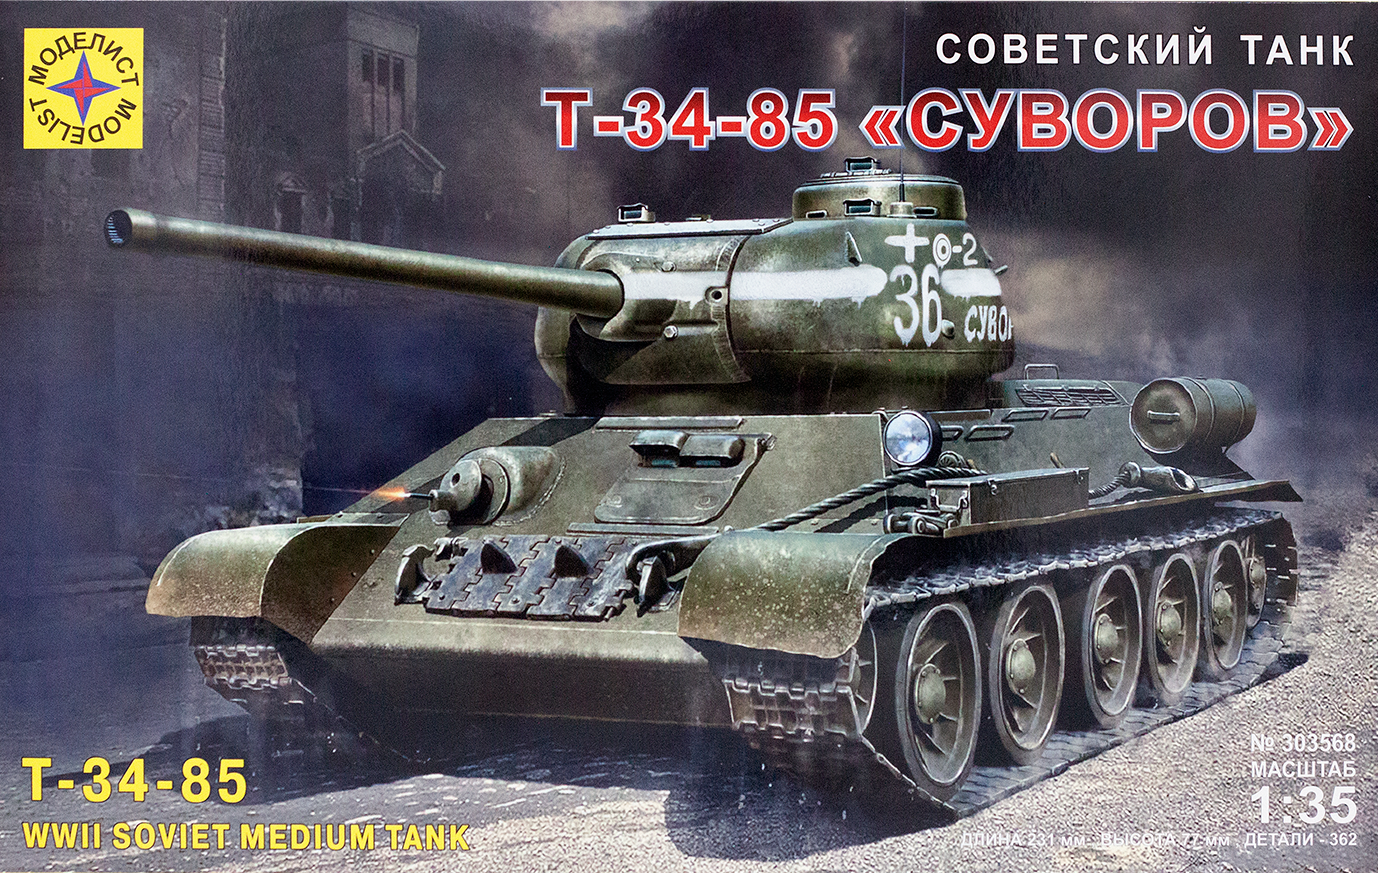 303568 Игрушка техника и вооружение Советский танк Т-34-85 "Суворов"